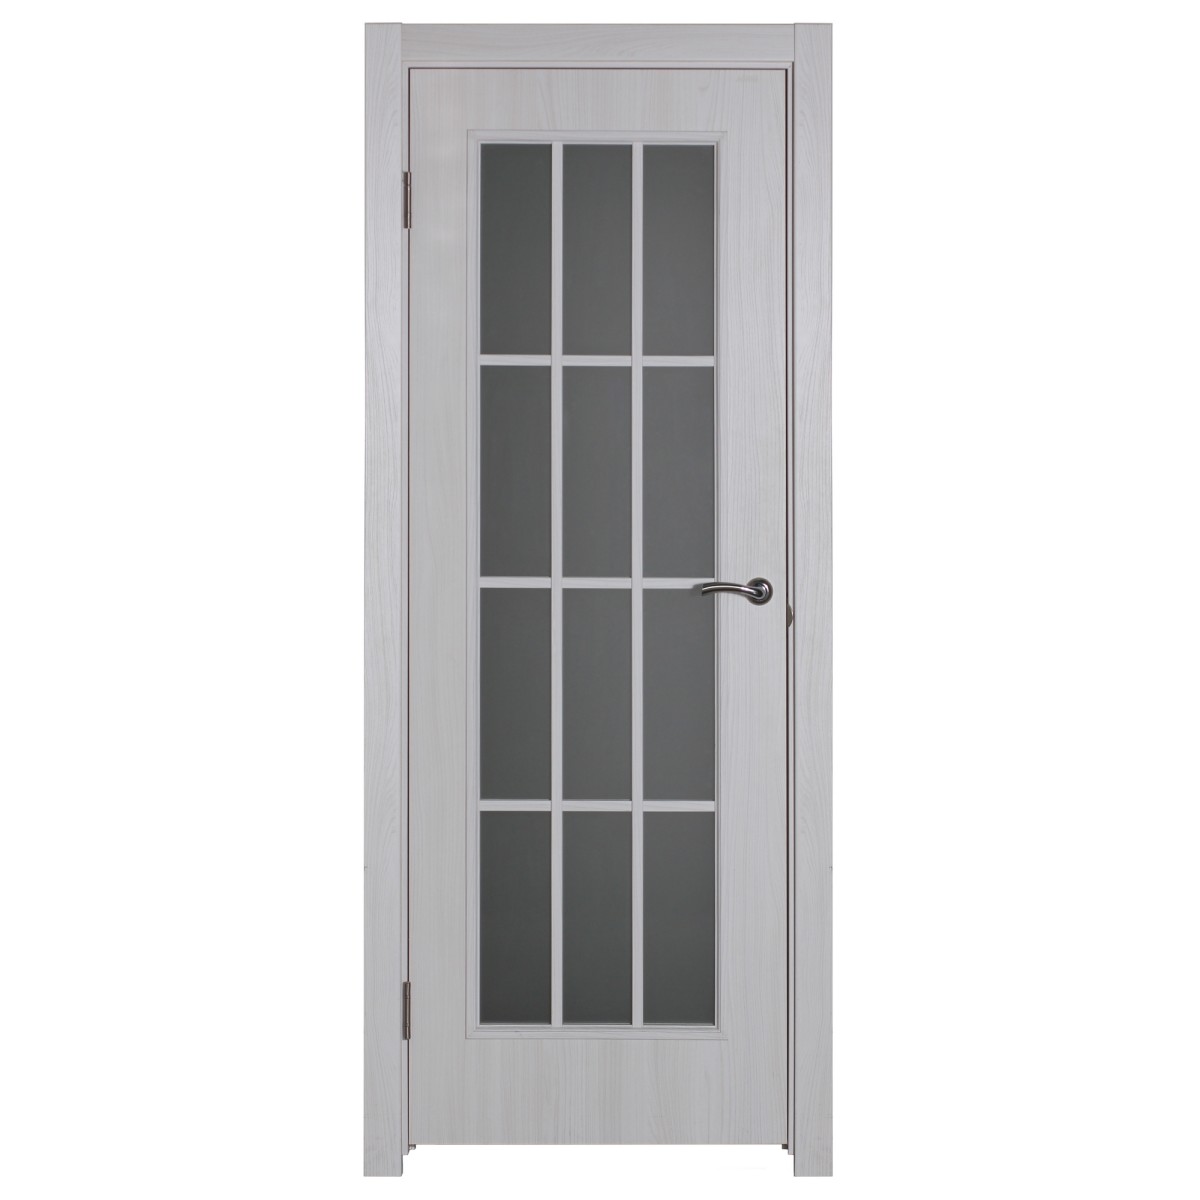 Дверь межкомнатная остеклённая Провенца 80x200 см цвет